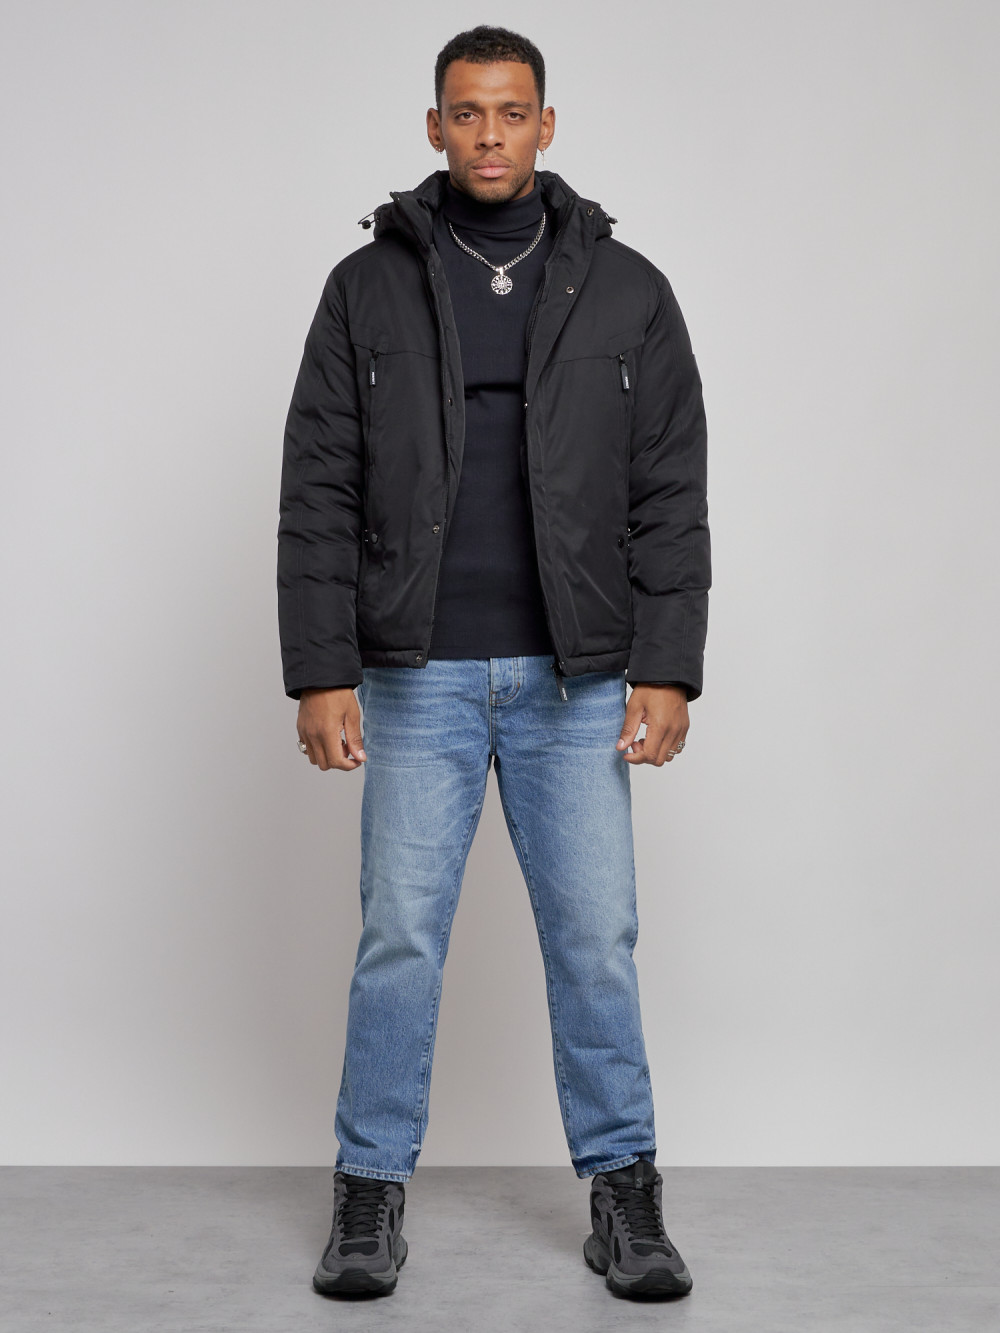 Купить Куртка мужская зимняя с капюшоном спортивная великан черного цвета 8332Ch